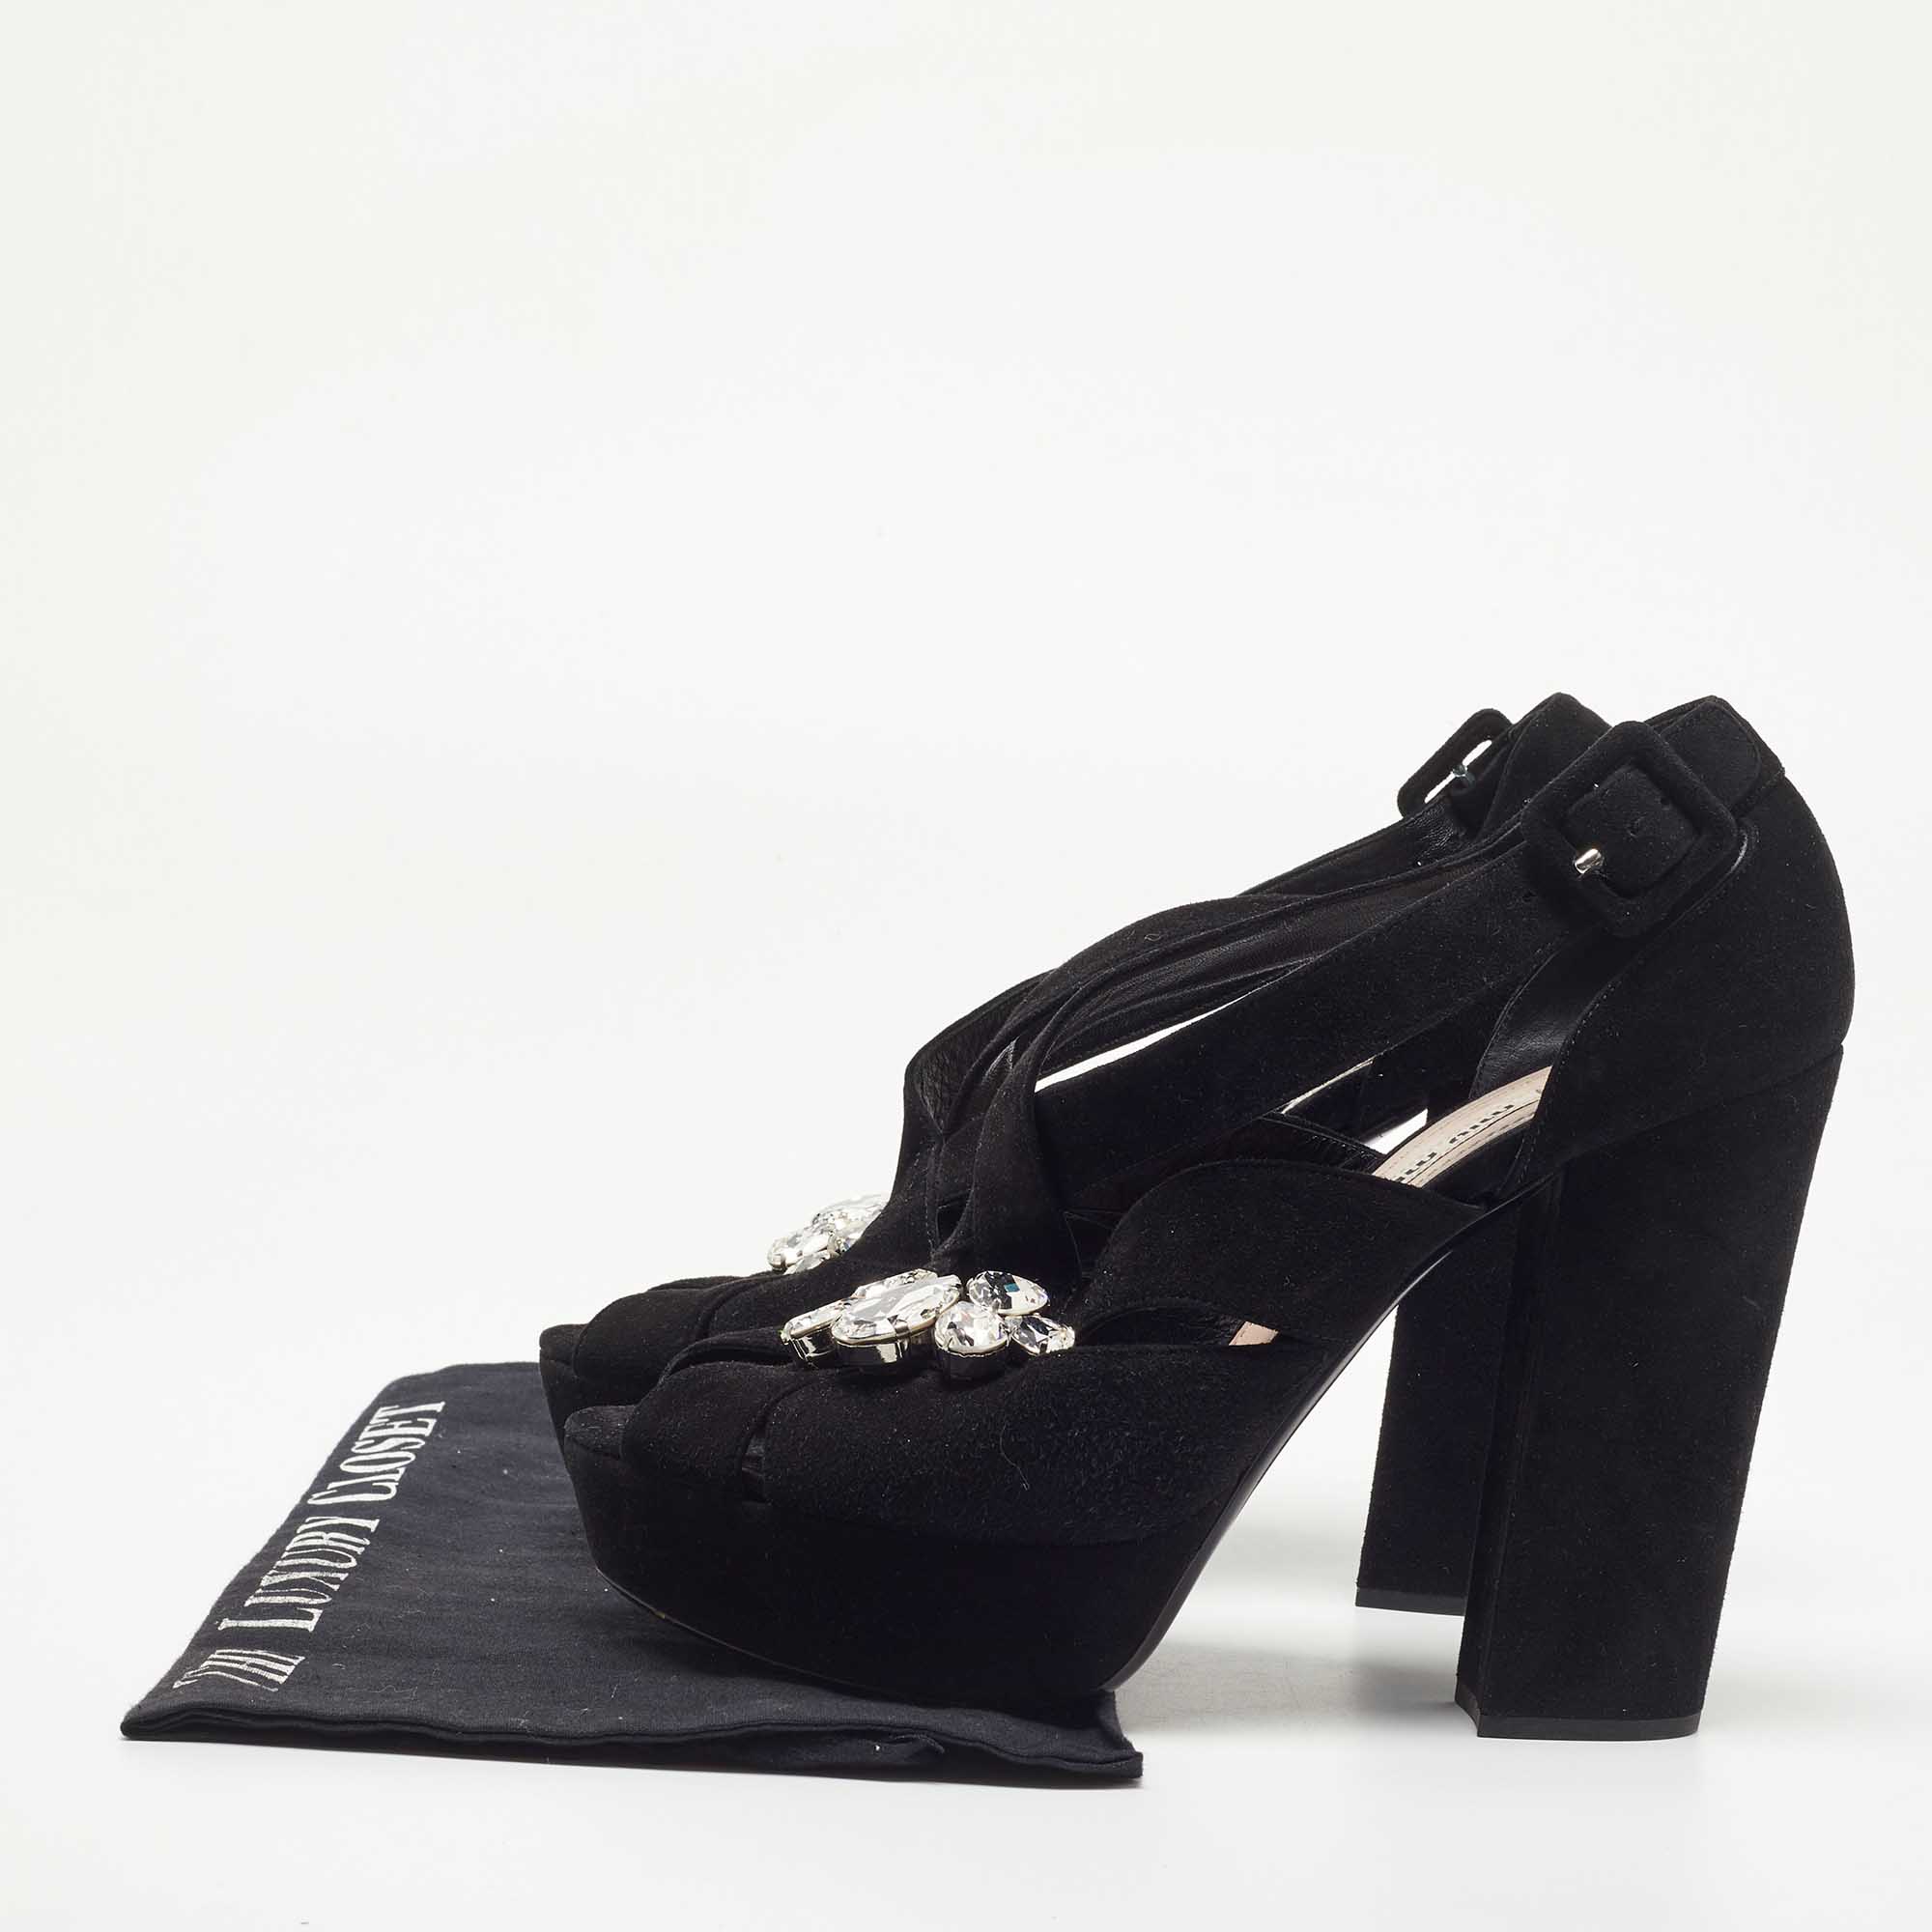 Miu Miu Black Suede Crystal Embellished Platform Sandals Size 40